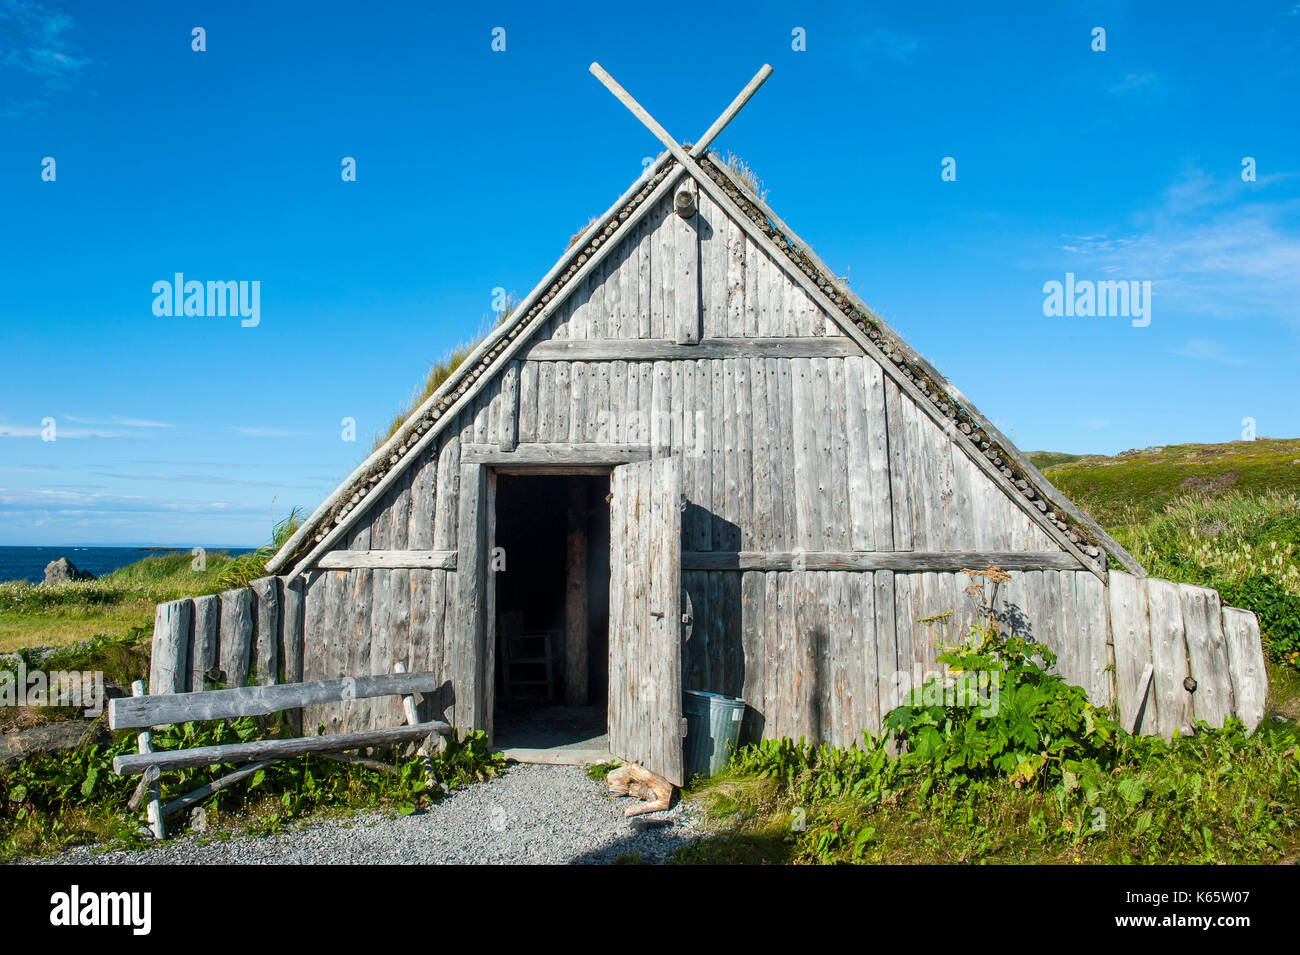 Tradicional edificio vikingo, norstead pueblo vikingo, la reconstrucción de un asentamiento de la Edad vikinga, Newfoundland, Canadá Foto de stock